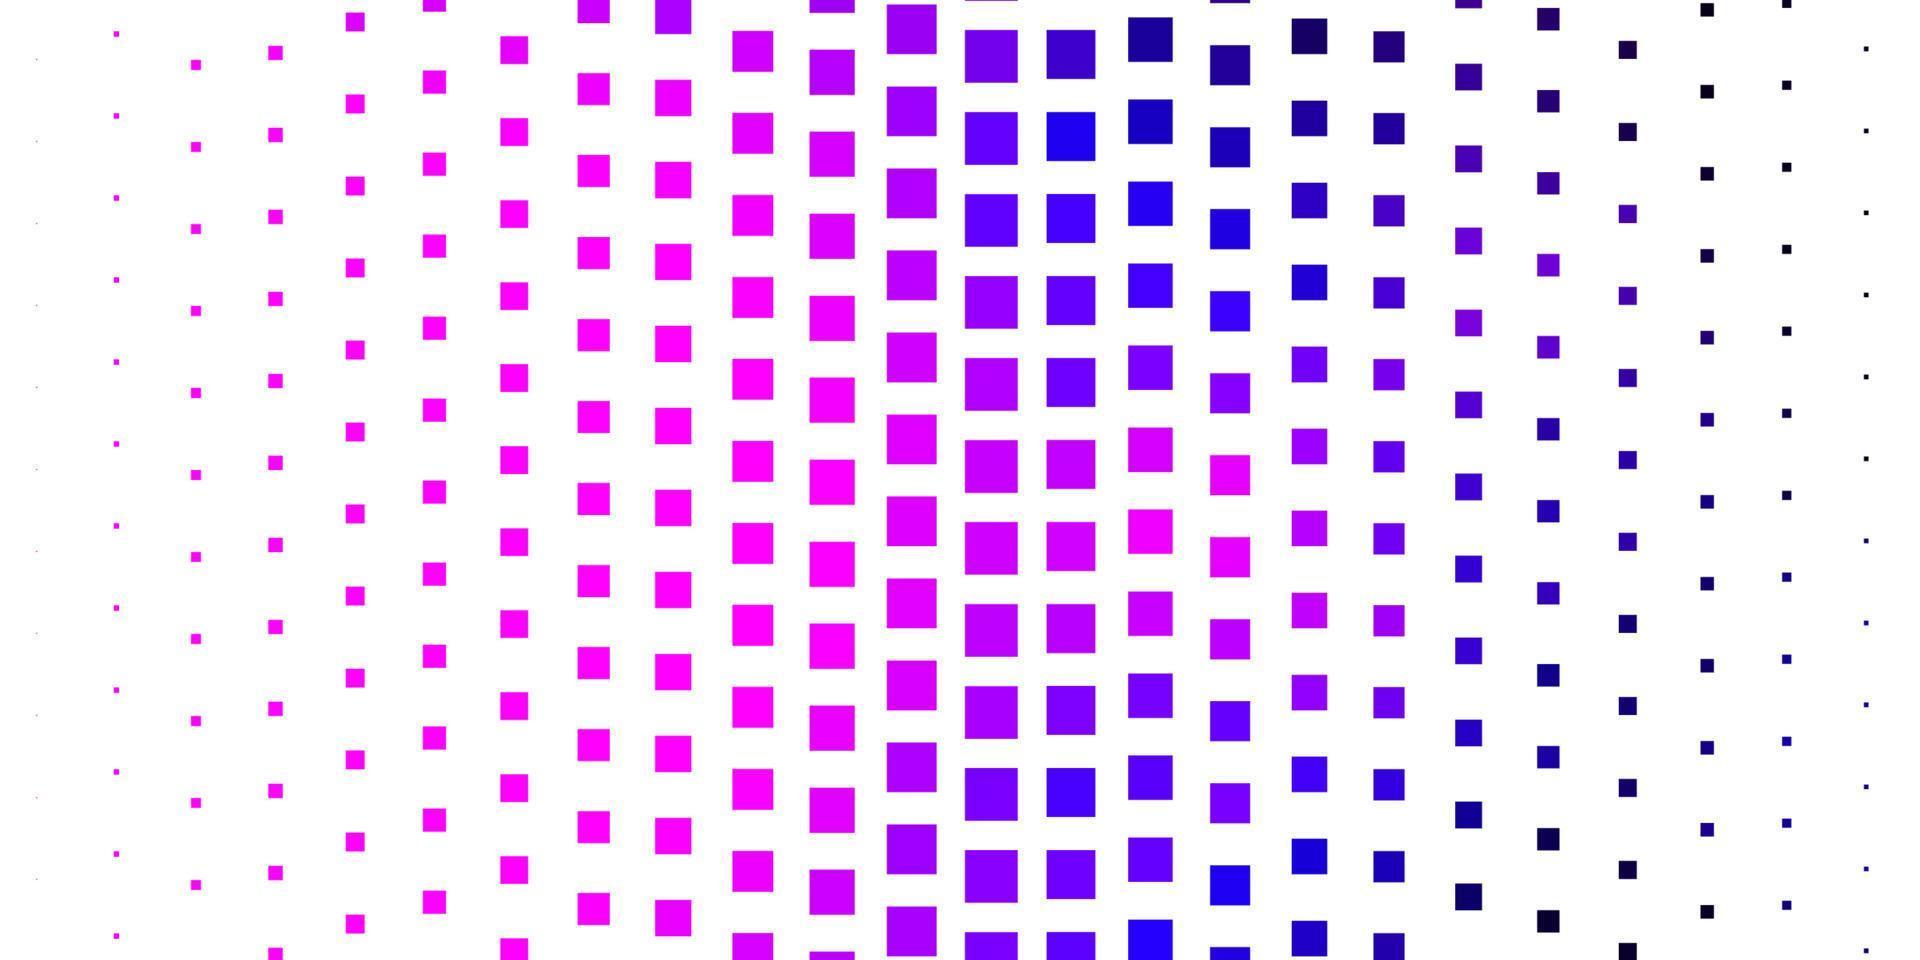 toile de fond de vecteur violet foncé avec des rectangles.